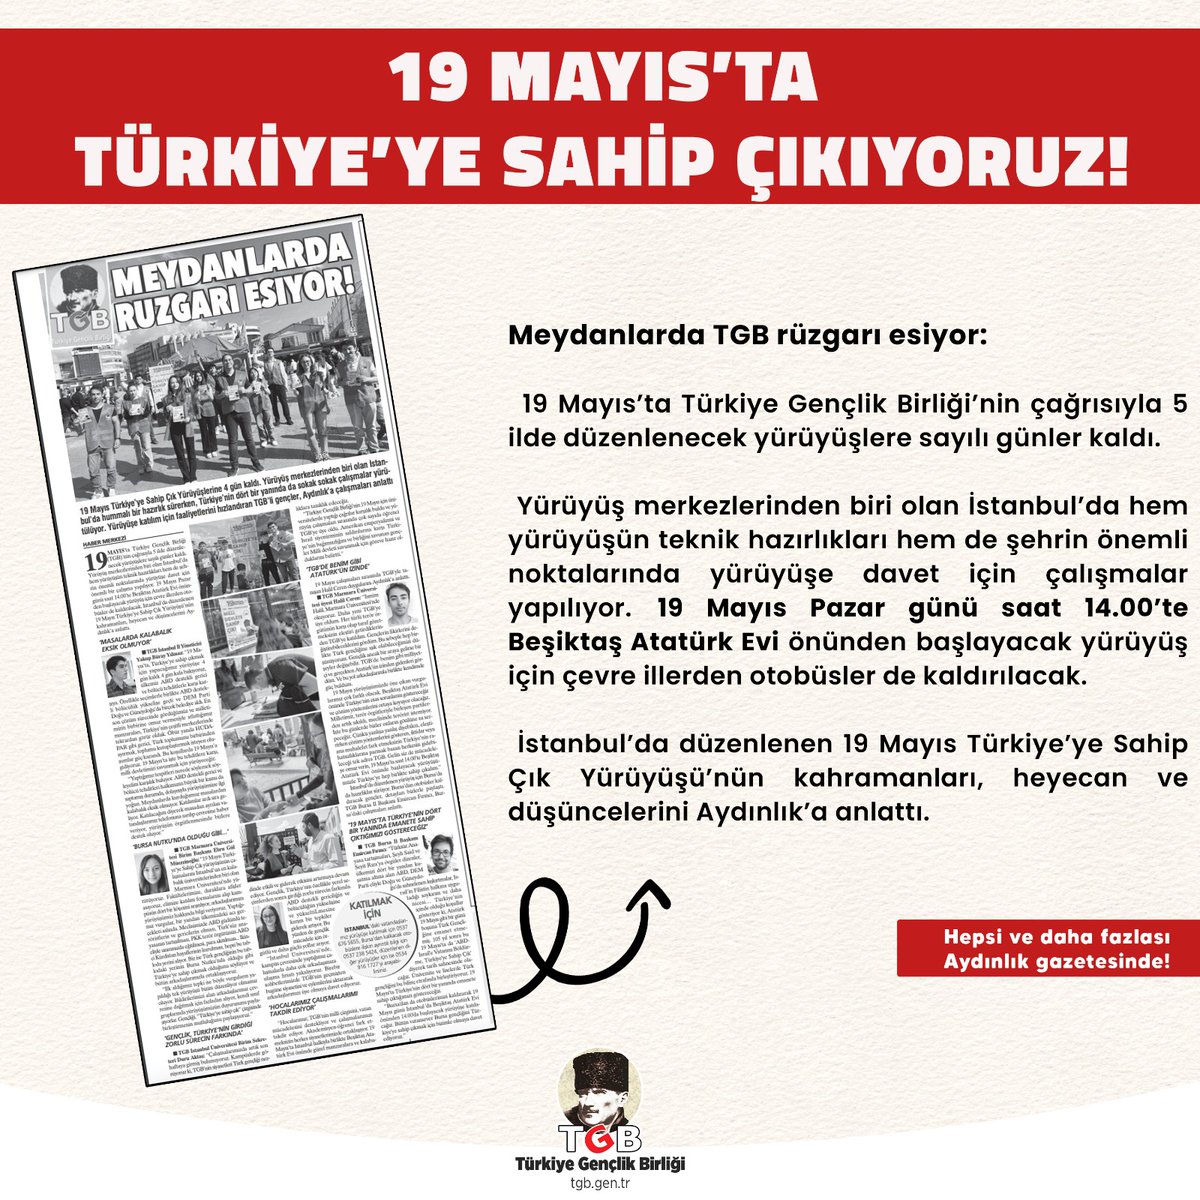 📌 Meydanlarda TGB rüzgarı esiyor: 19 Mayıs'ta Türkiye'ye Sahip Çıkıyoruz! ➡️ ‘GENÇLİK, TÜRKİYE’NİN GİRDİĞİ ZORLU SÜRECİN FARKINDA’ ➡️ YÜRÜŞLERE KATILMAK İÇİN NE YAPMAK GEREKİYOR Hepsi ve daha fazlası Aydınlık gazetesinde! 🗞️@AydinlikGazete aydinlik.com.tr/haber/19-mayis…